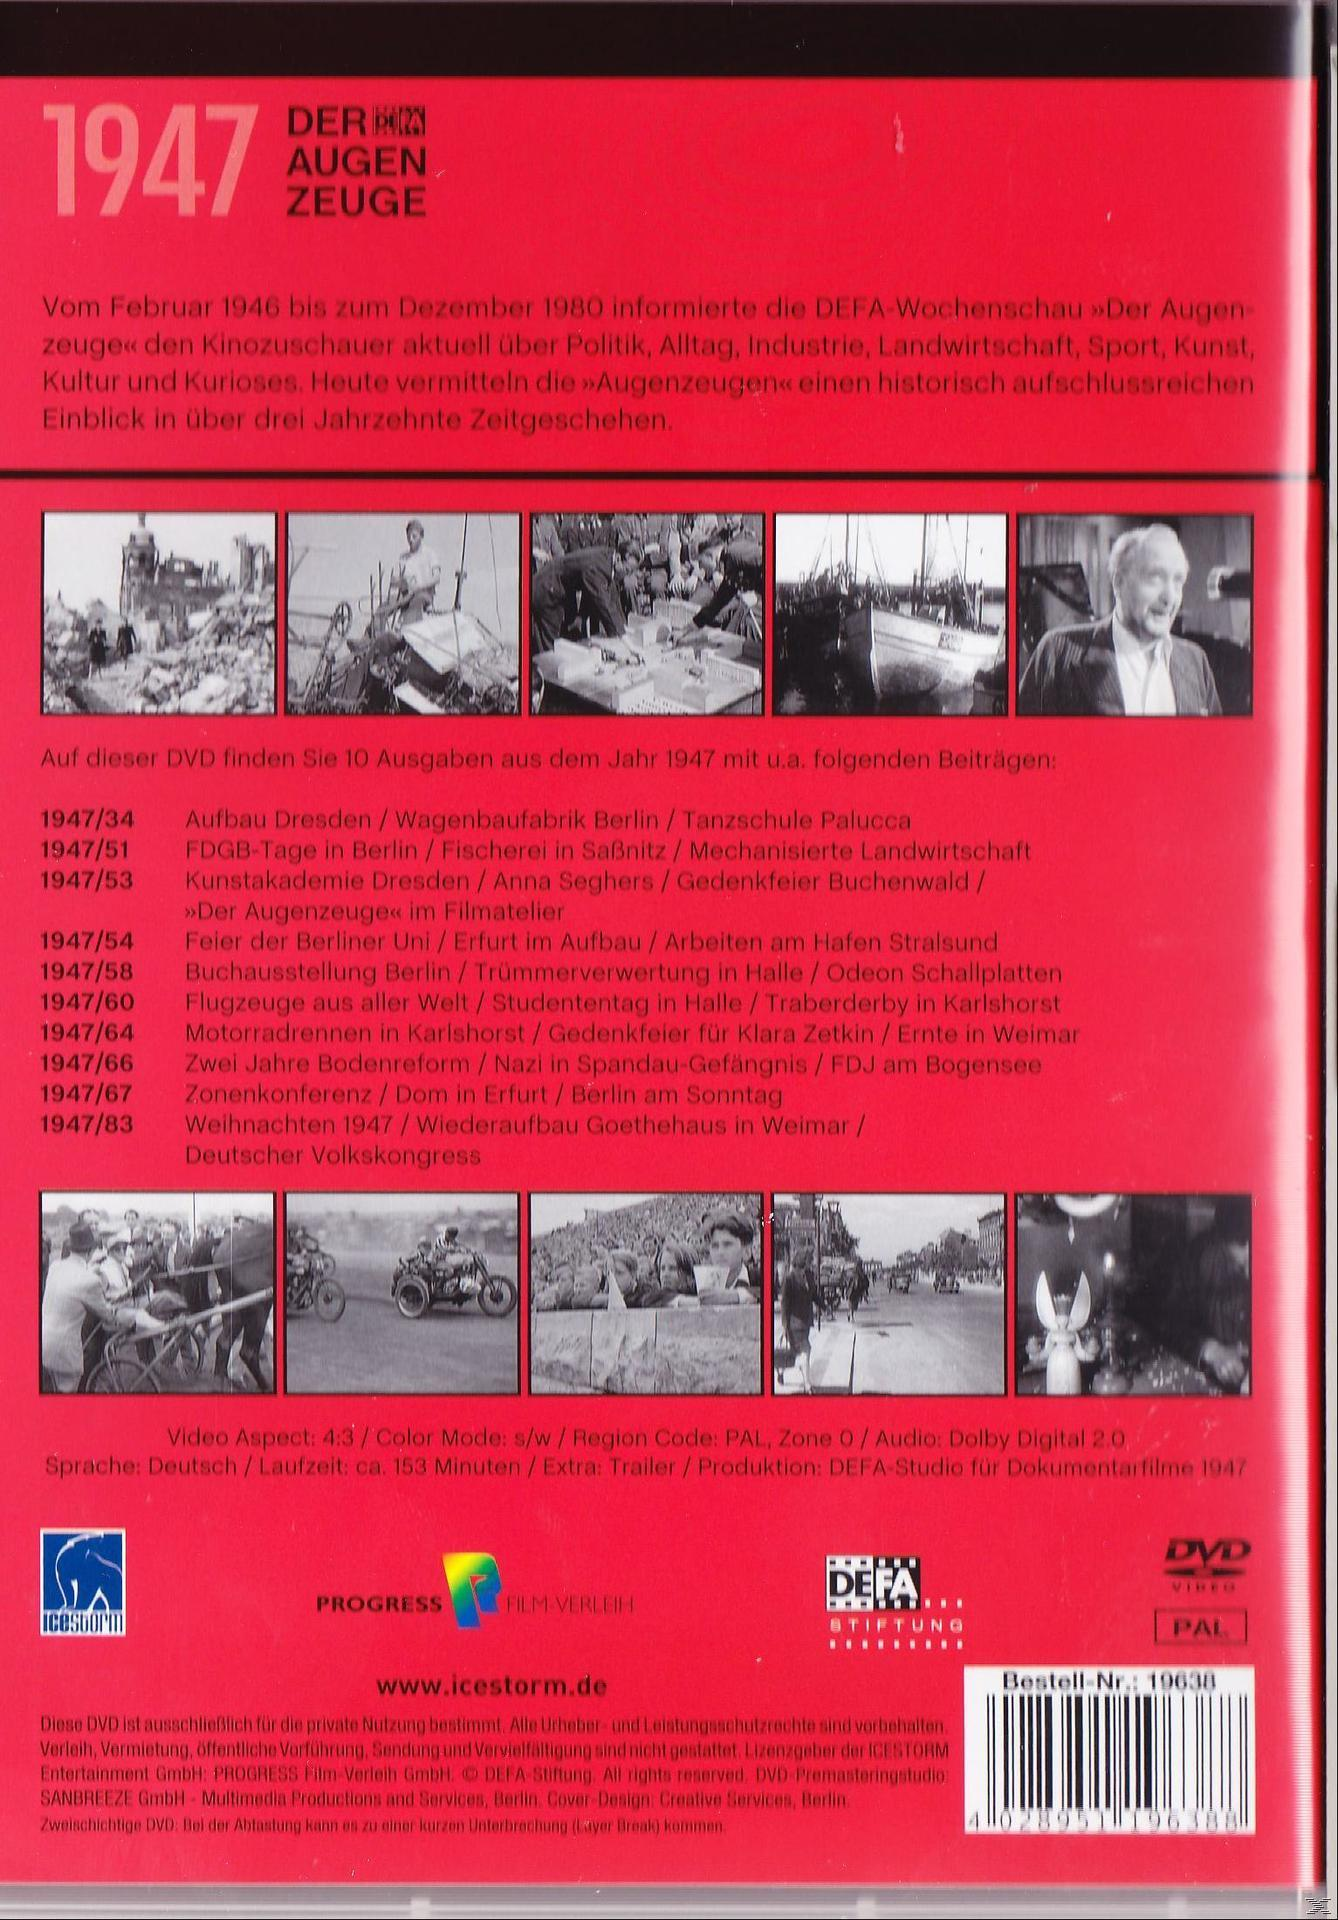 Der Augenzeuge 1947 DVD